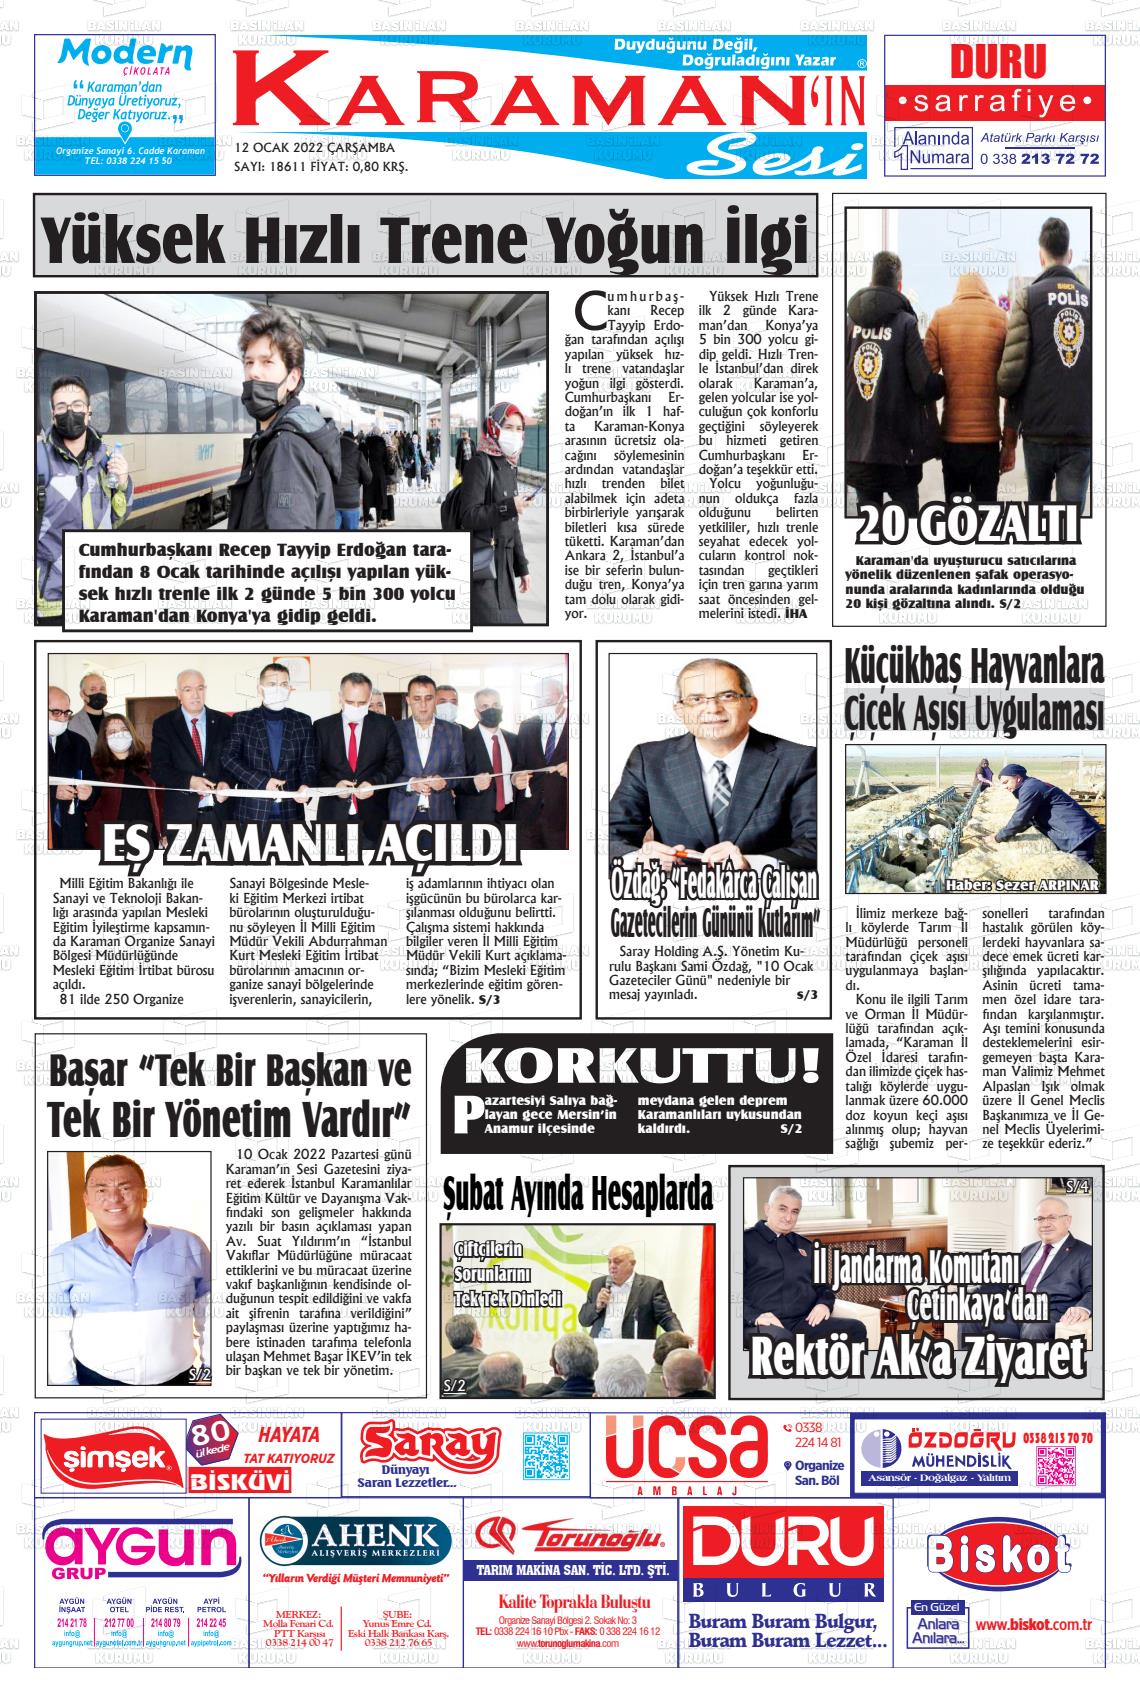 12 Ocak 2022 Karaman'ın Sesi Gazete Manşeti